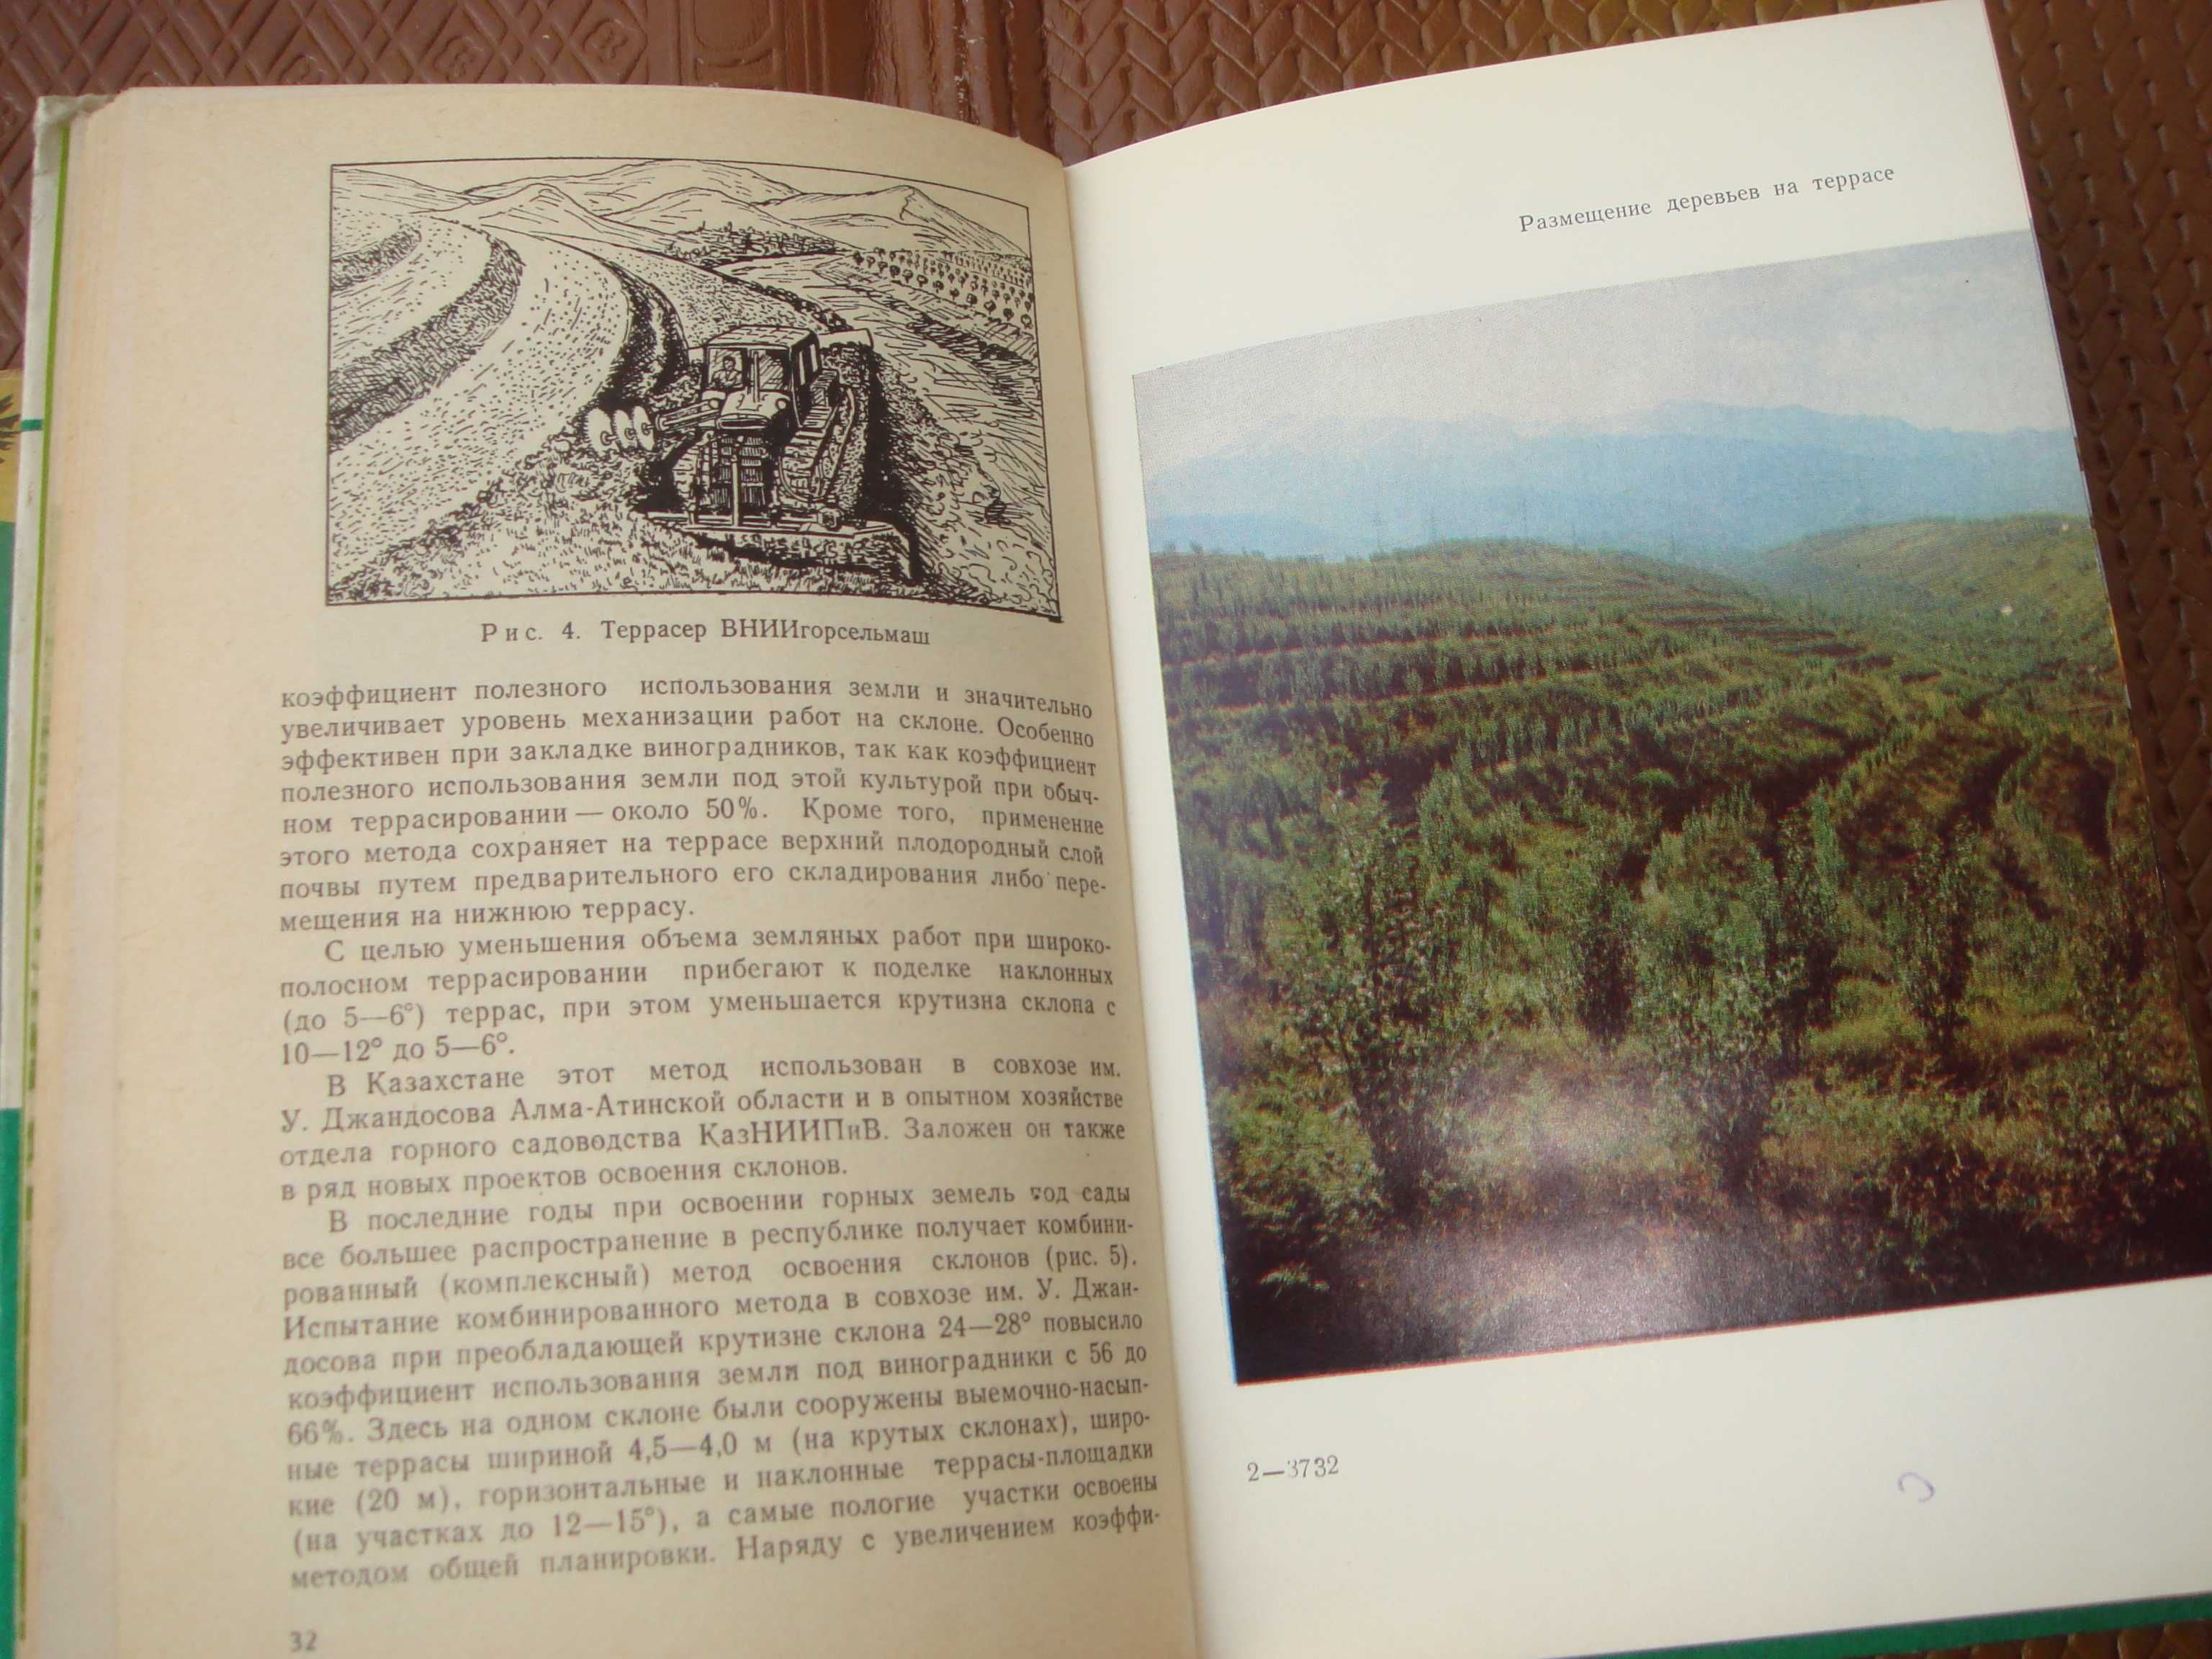 Книги Цветы 1964 года и Сады на Террасах 1983 Алма-Ата